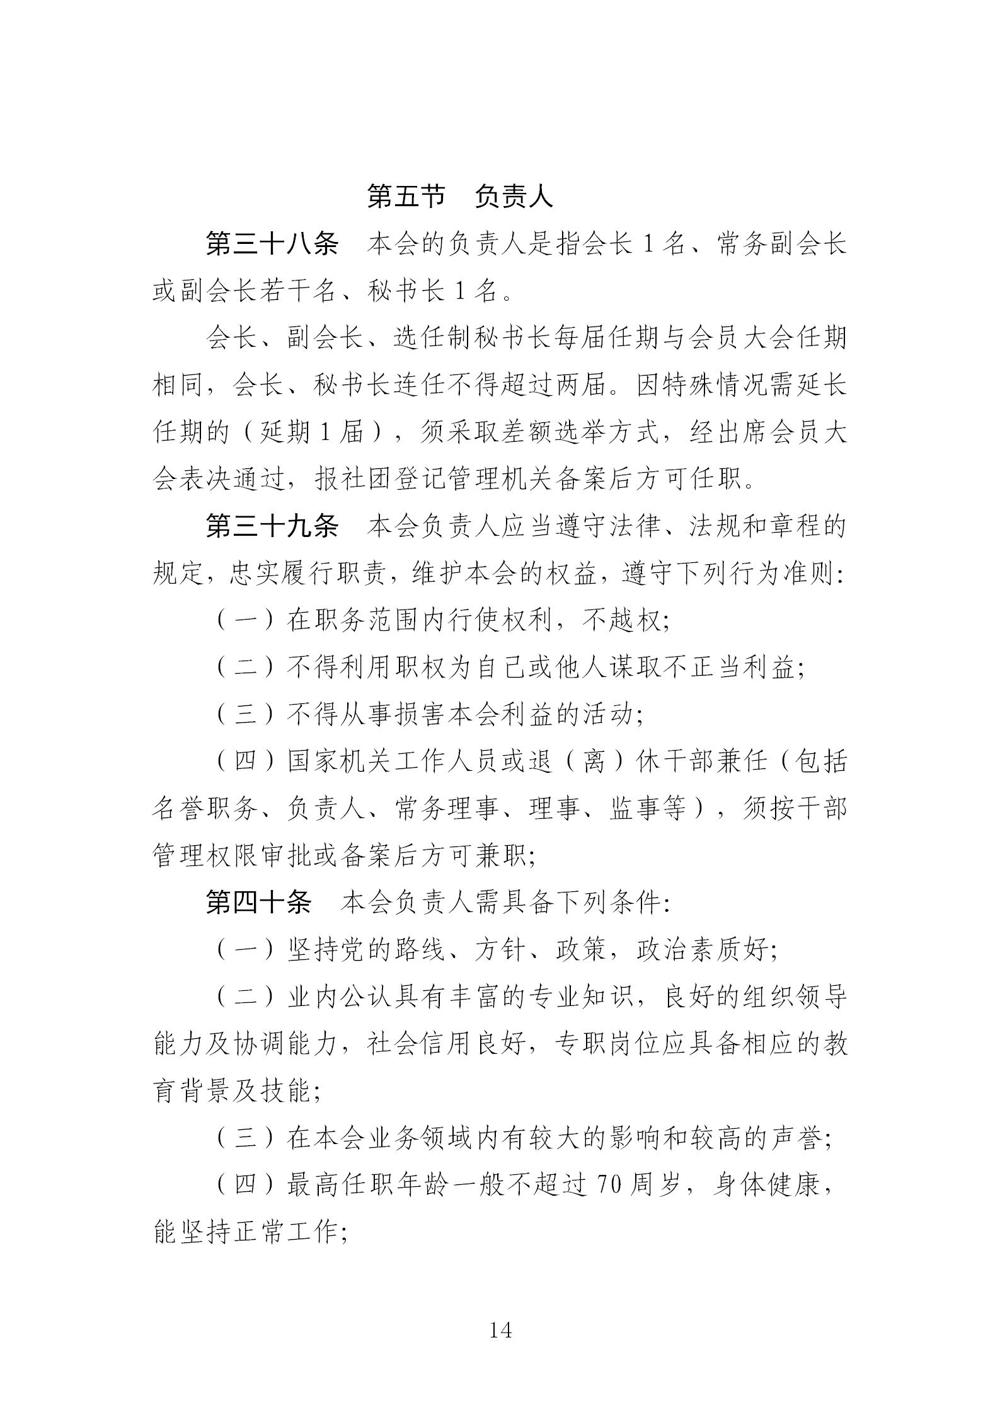 3-广东省羽毛球协会新章程20221107-根据民政厅修改意见修改_14